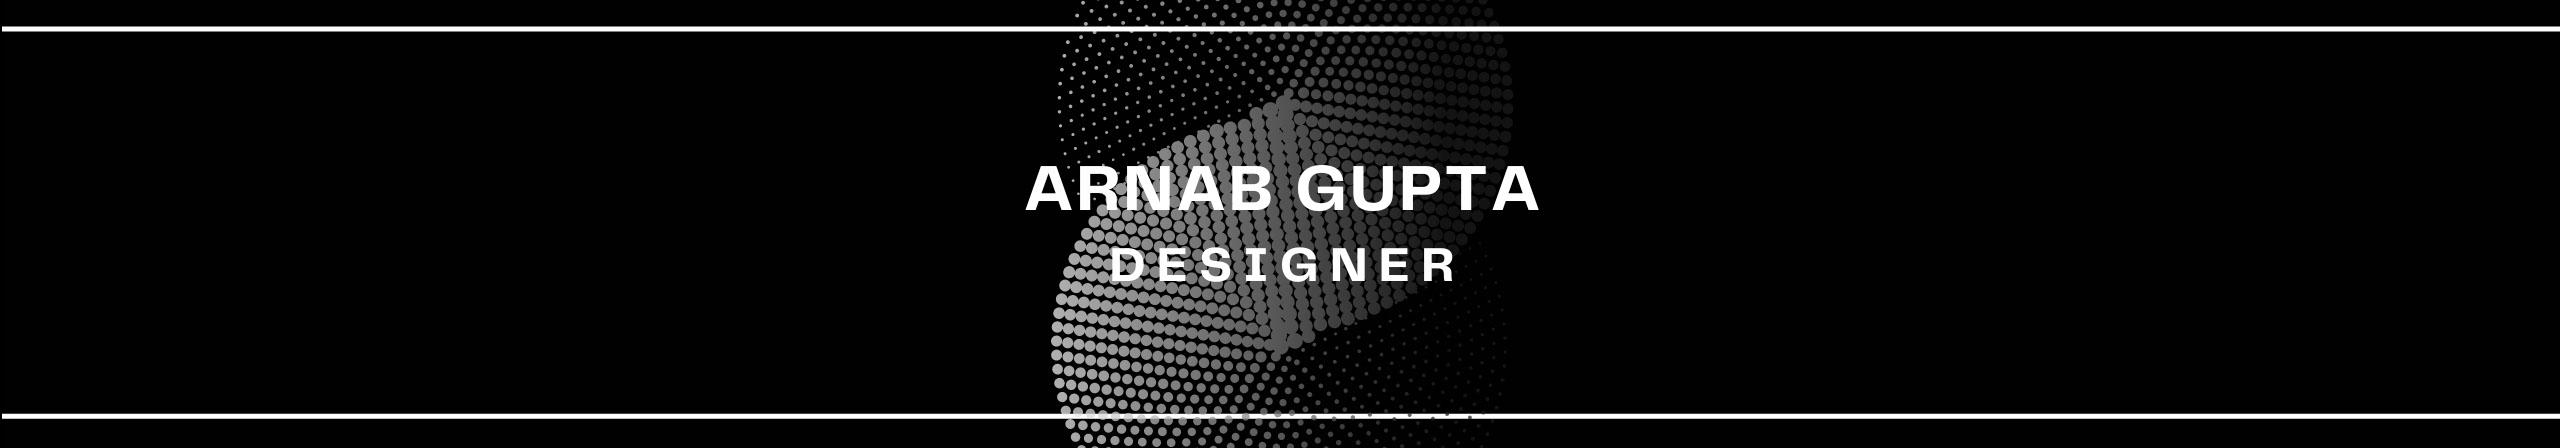 Arnab Gupta's profile banner